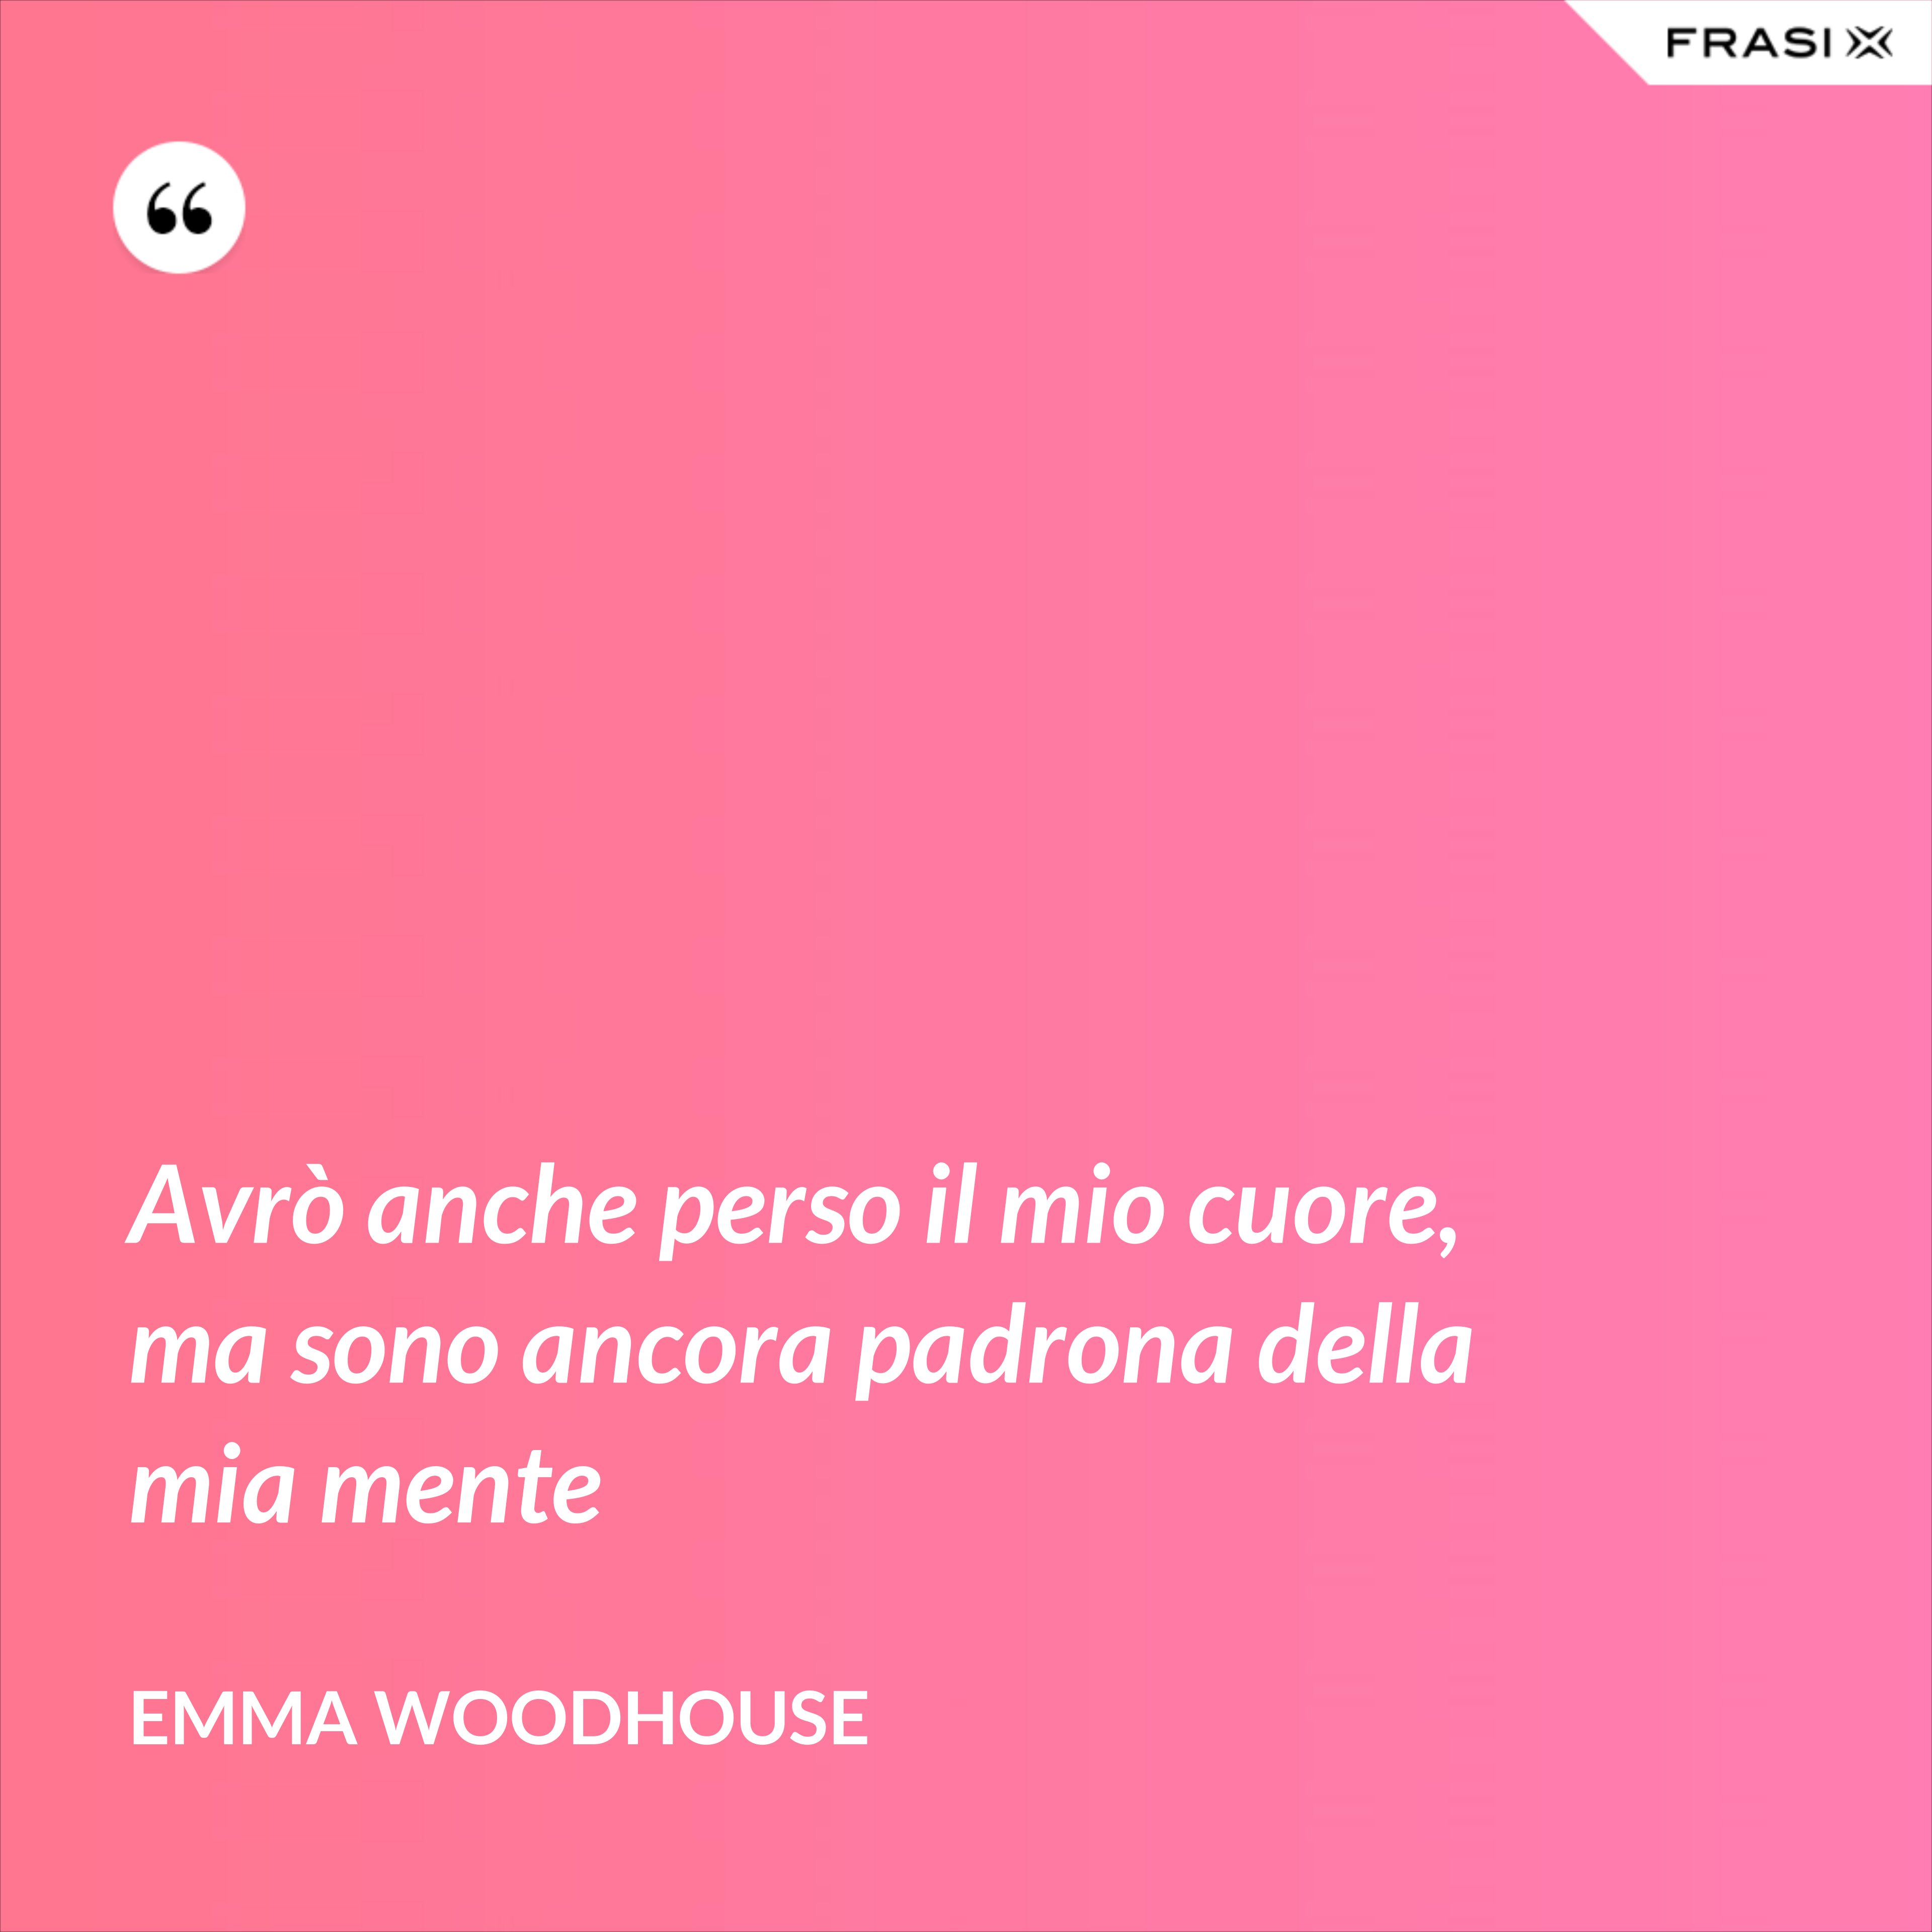 Avrò anche perso il mio cuore, ma sono ancora padrona della mia mente - Emma Woodhouse